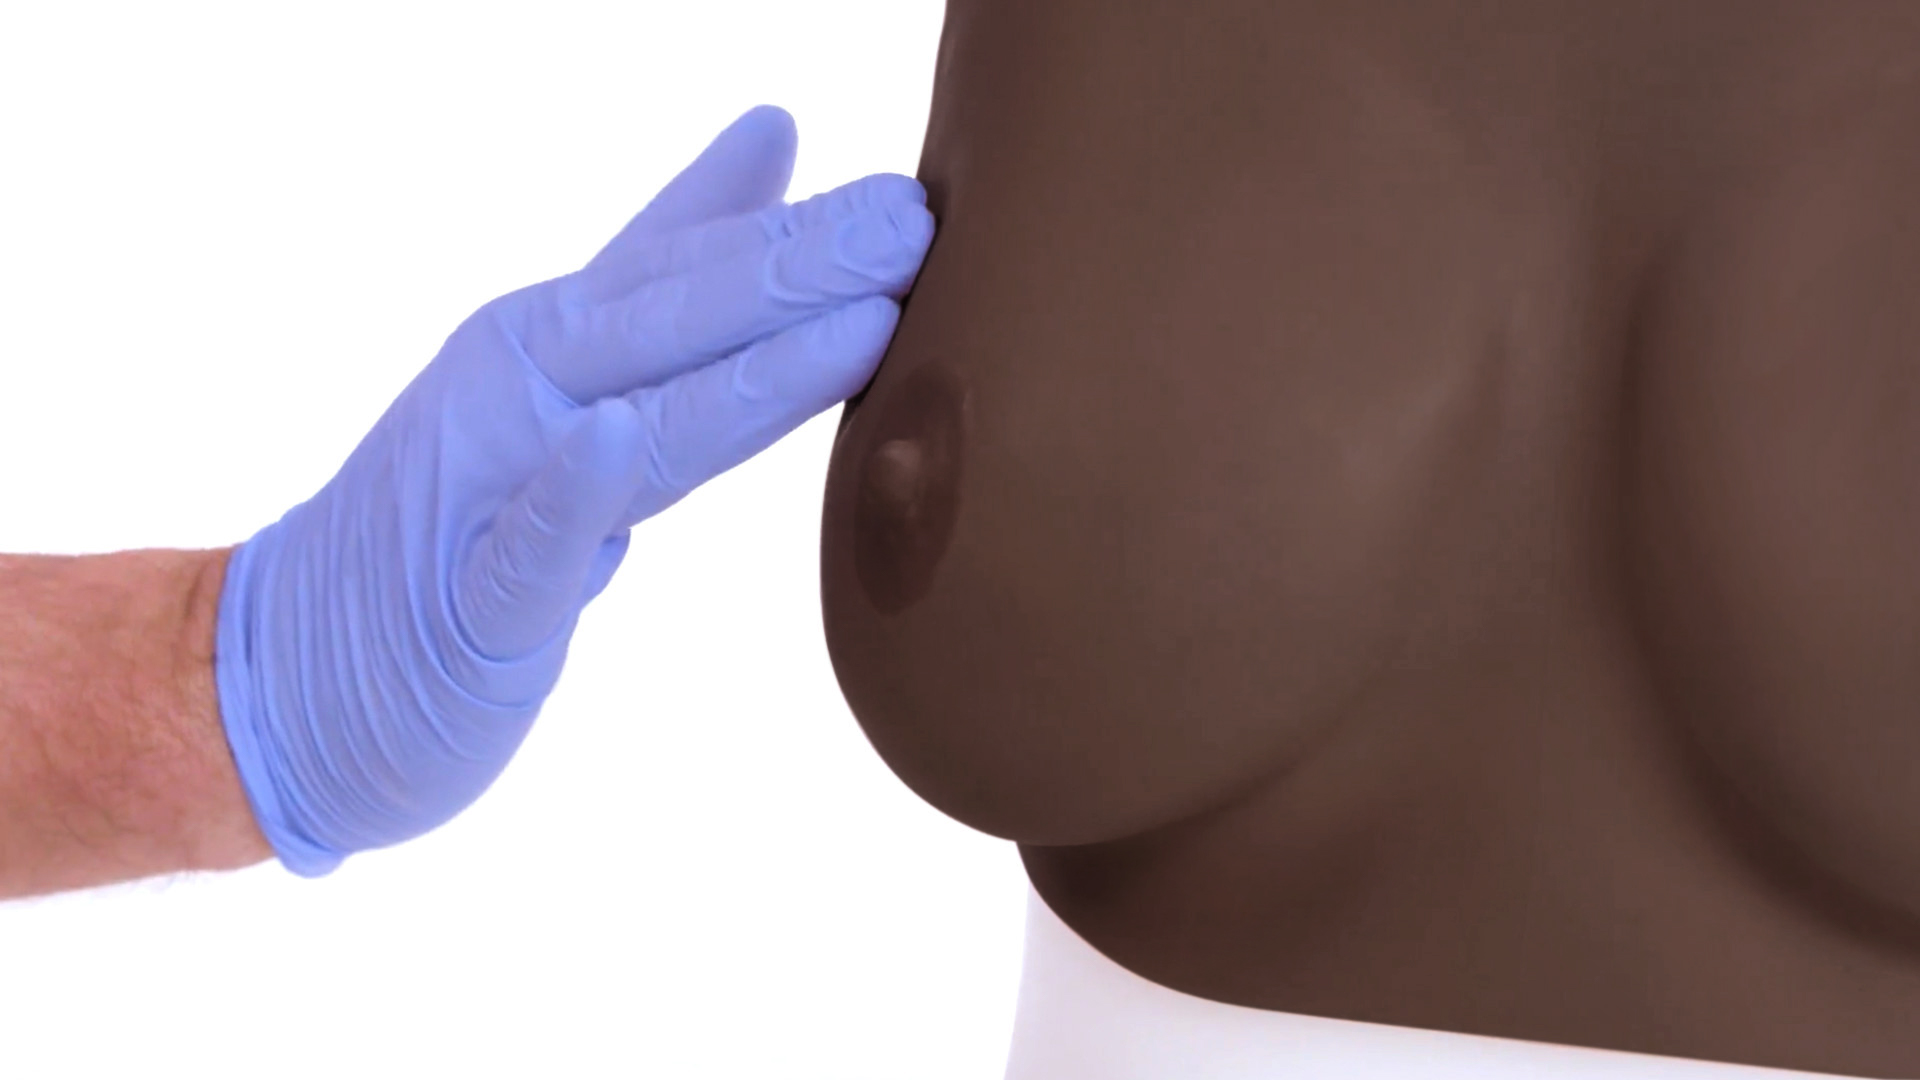 Standard Breast Examination Trainer (Dark Skin Tone)